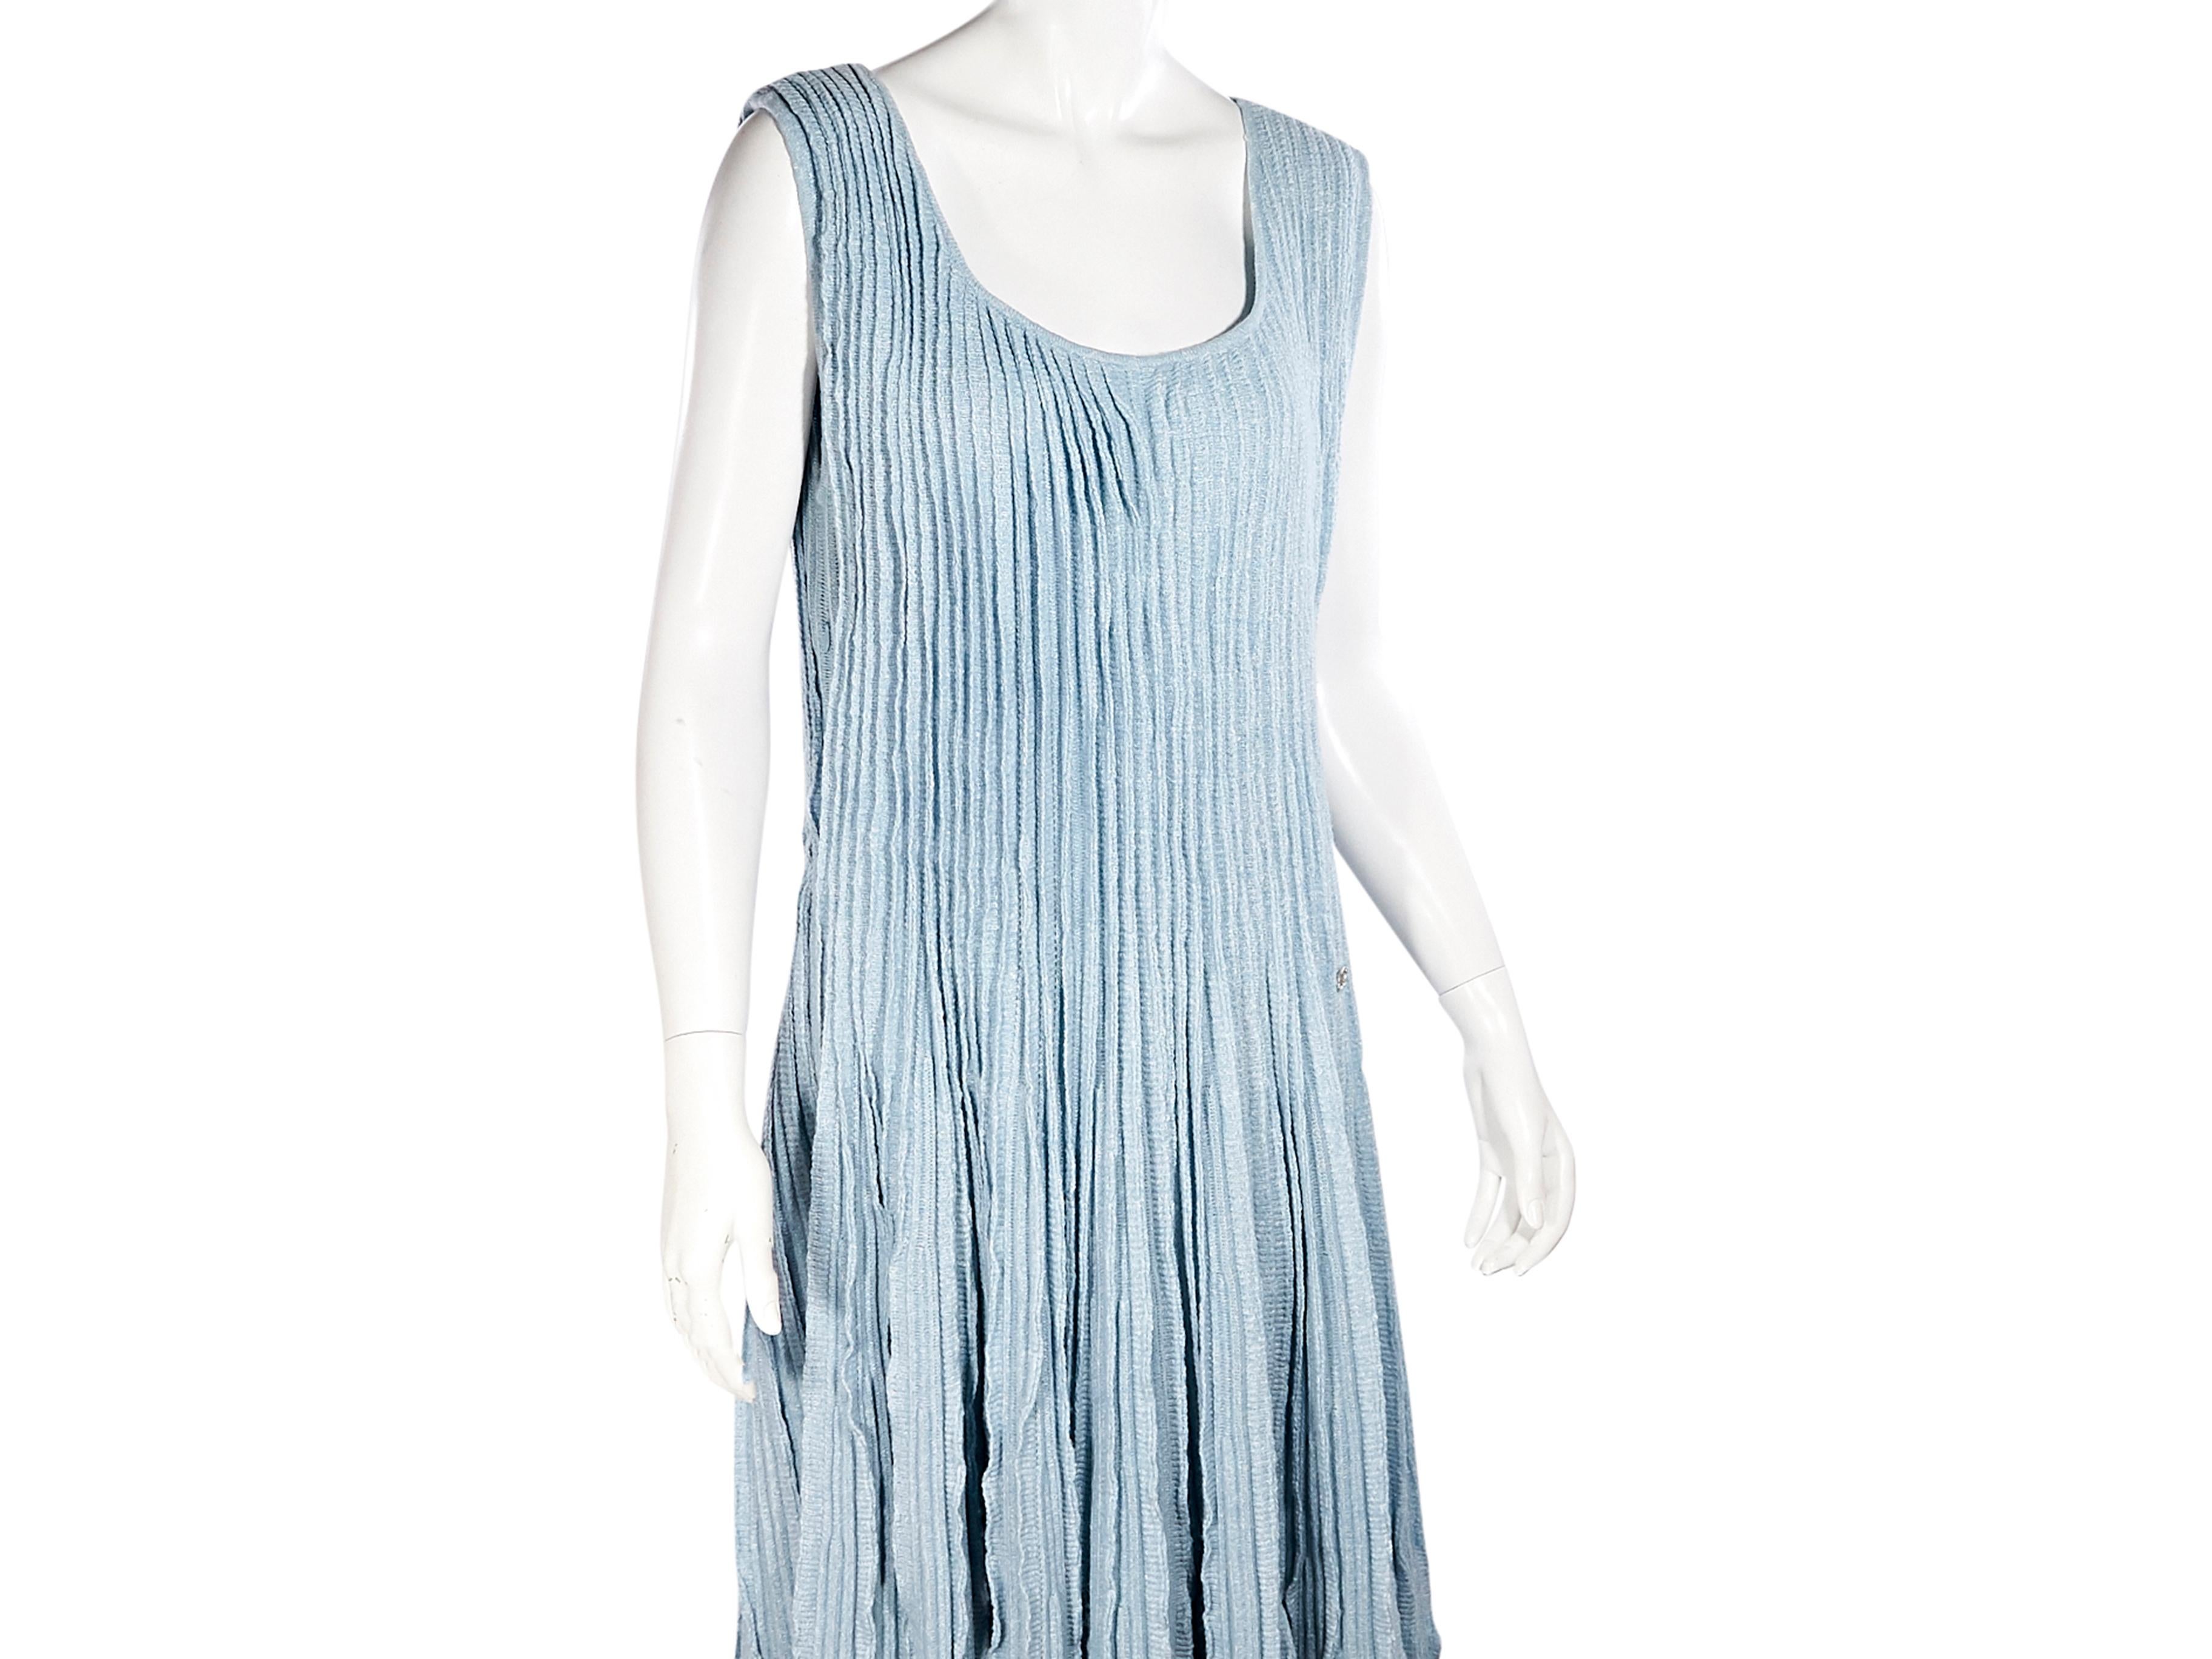 Women's Light Blue Chanel Knit Tank Dress